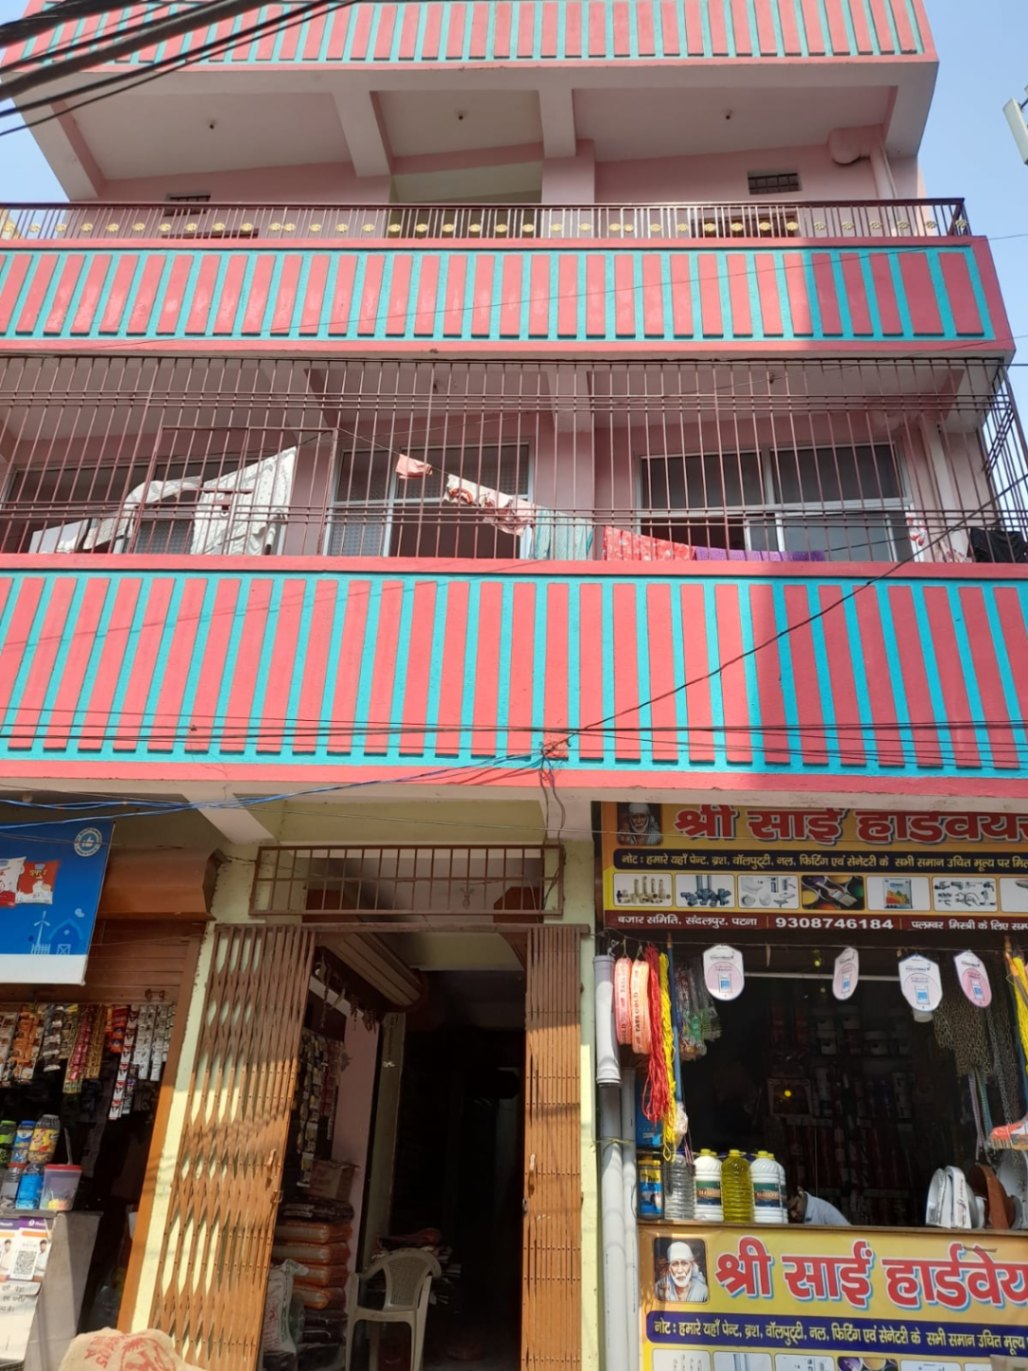 Rent Office/ Shop, 01200 sq ft carpet area, Furnished for rent @Bazar samiti, Patna, Bihar